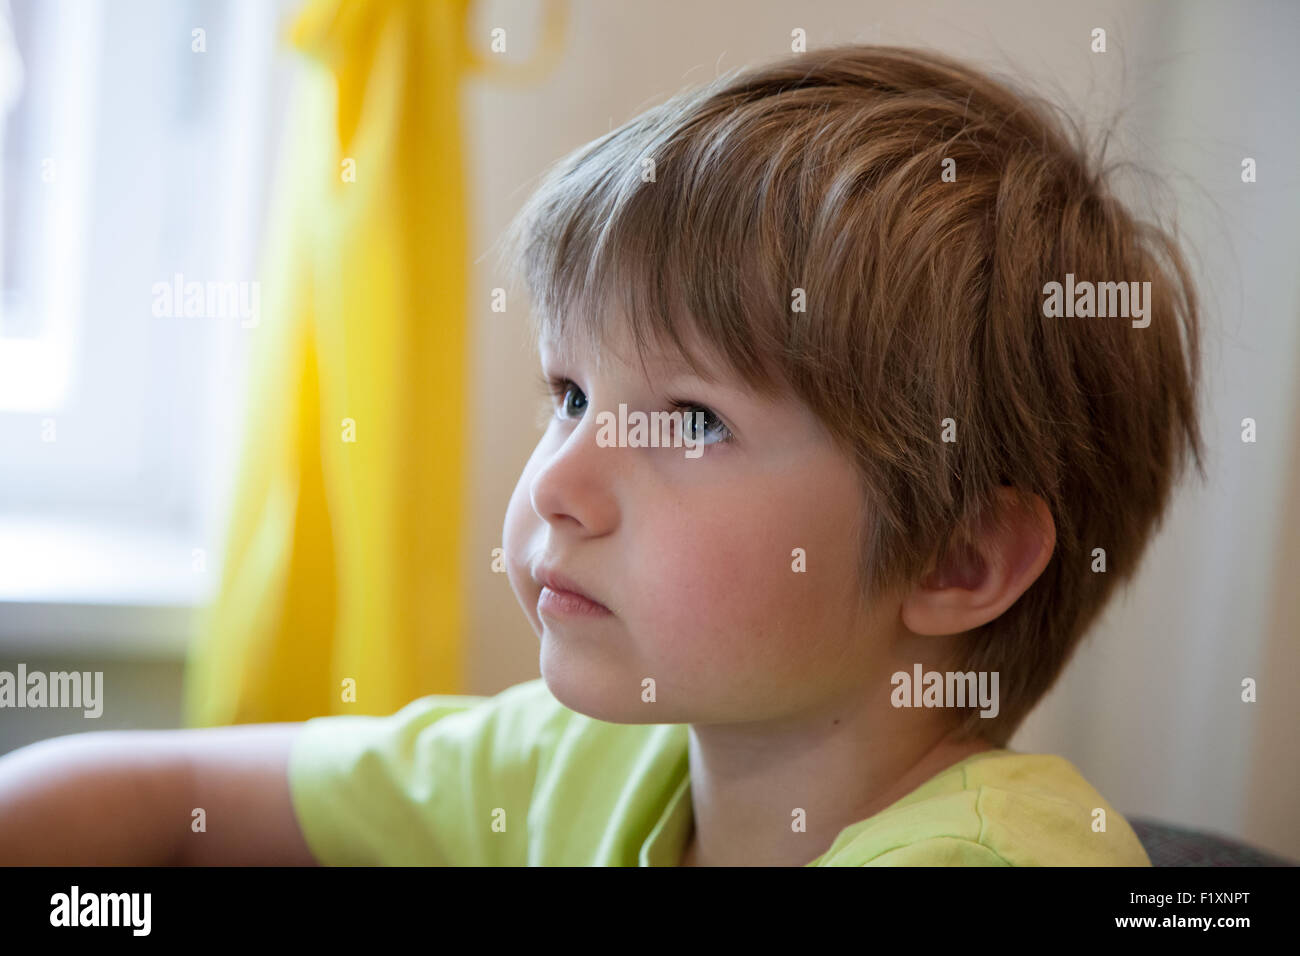 Un petit garçon qui regarde et écoute attentivement Banque D'Images